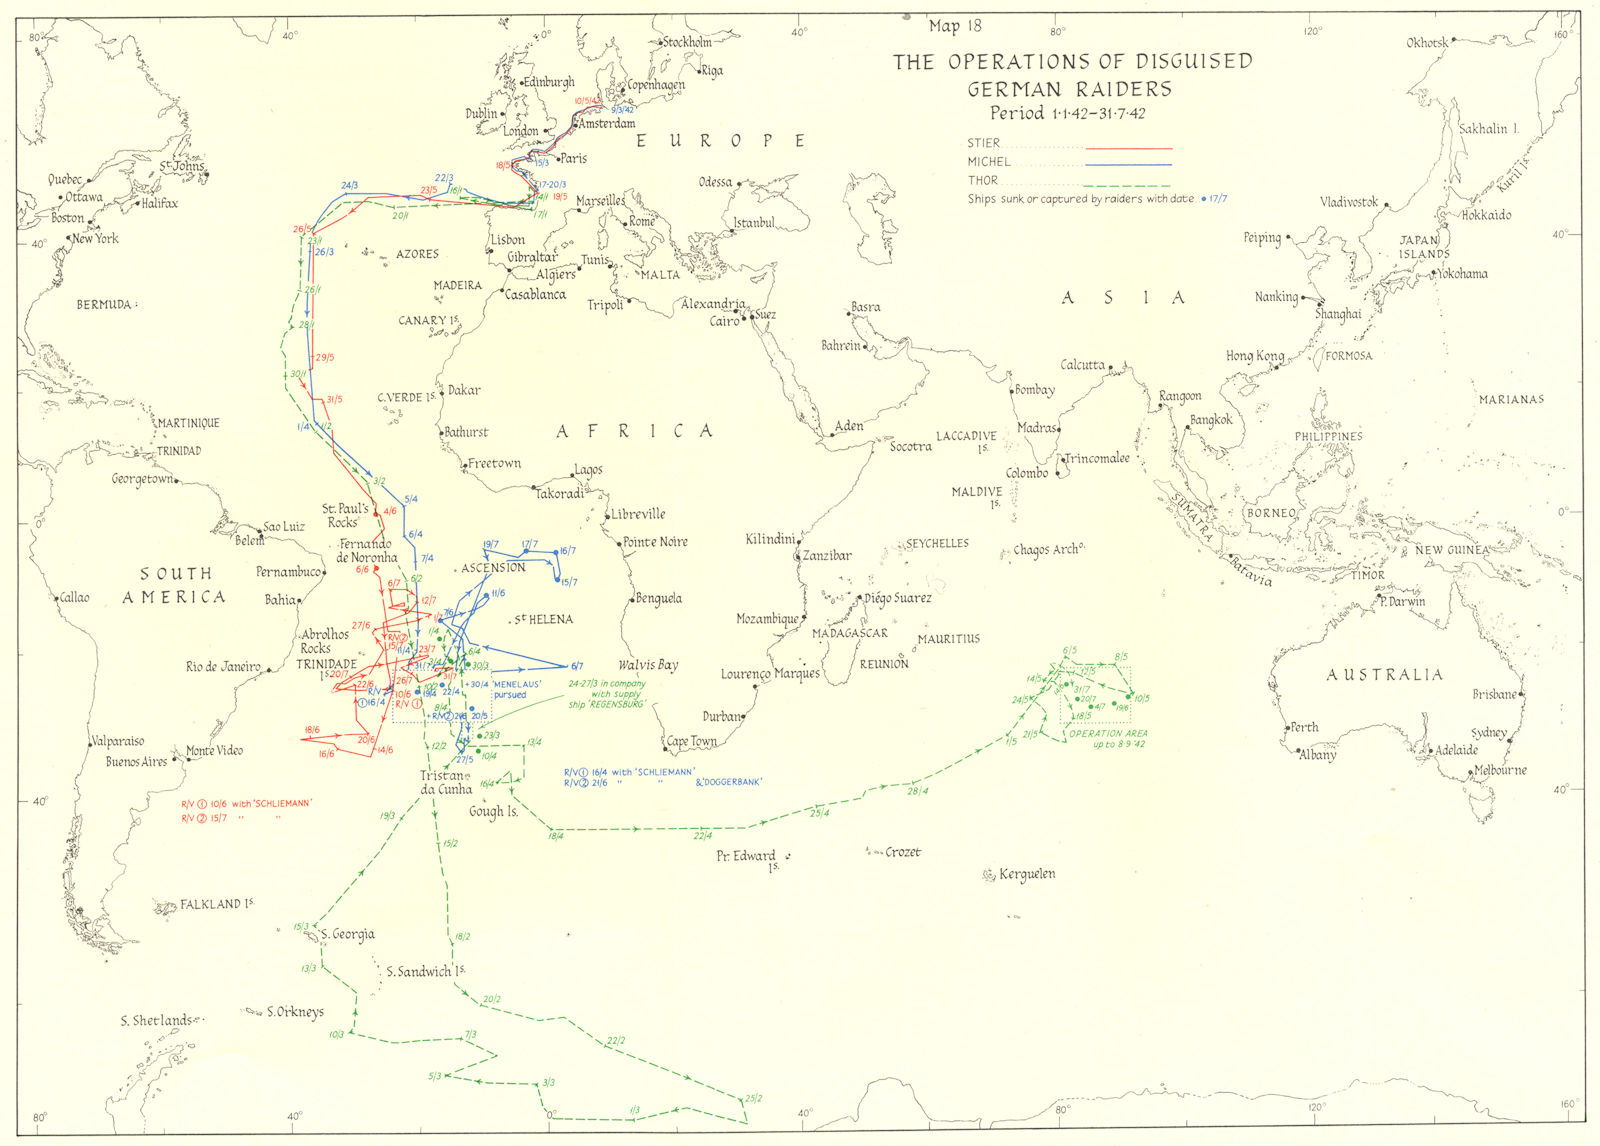 OCEAN WARFARE. Jan-July 1942. Operations of disguised German raiders 1956 map